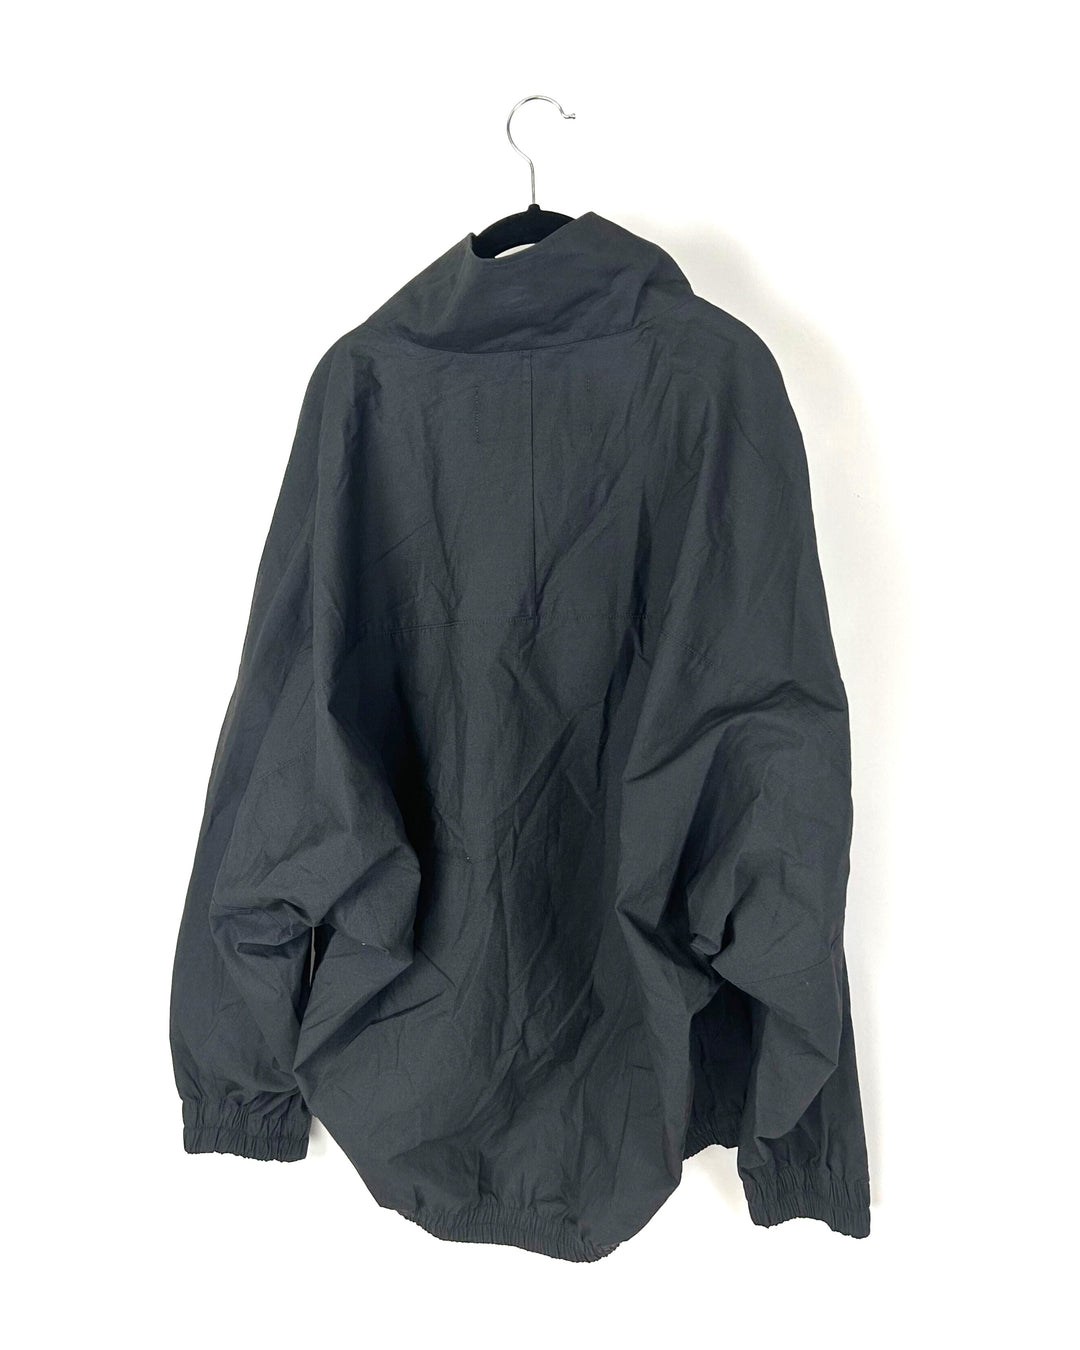 MENS Dark Gray Quarter Zip Pullover - Medium